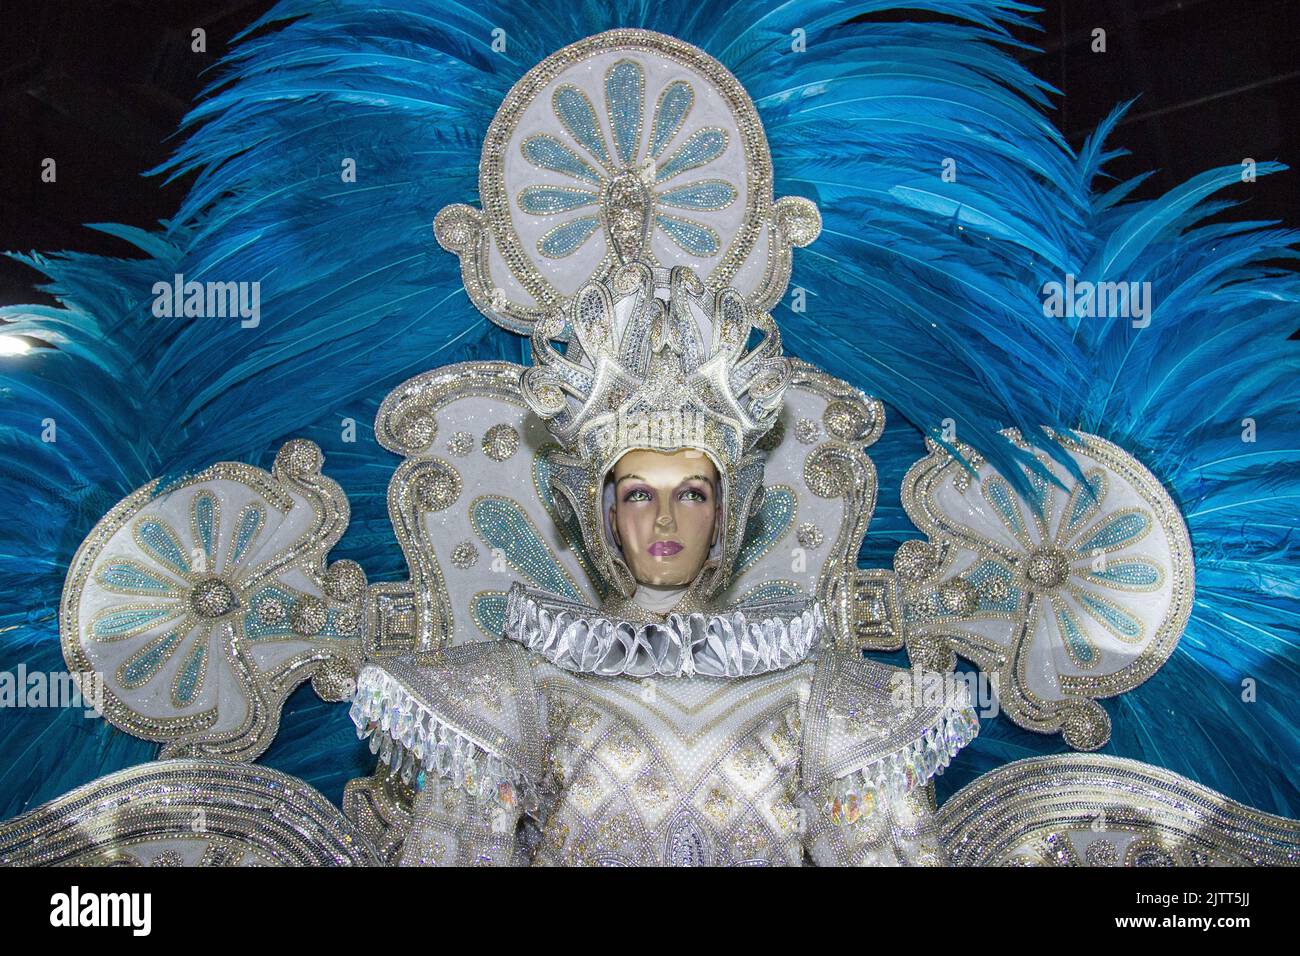 Carnival costume in Rio de Janeiro Brazil Stock Photo